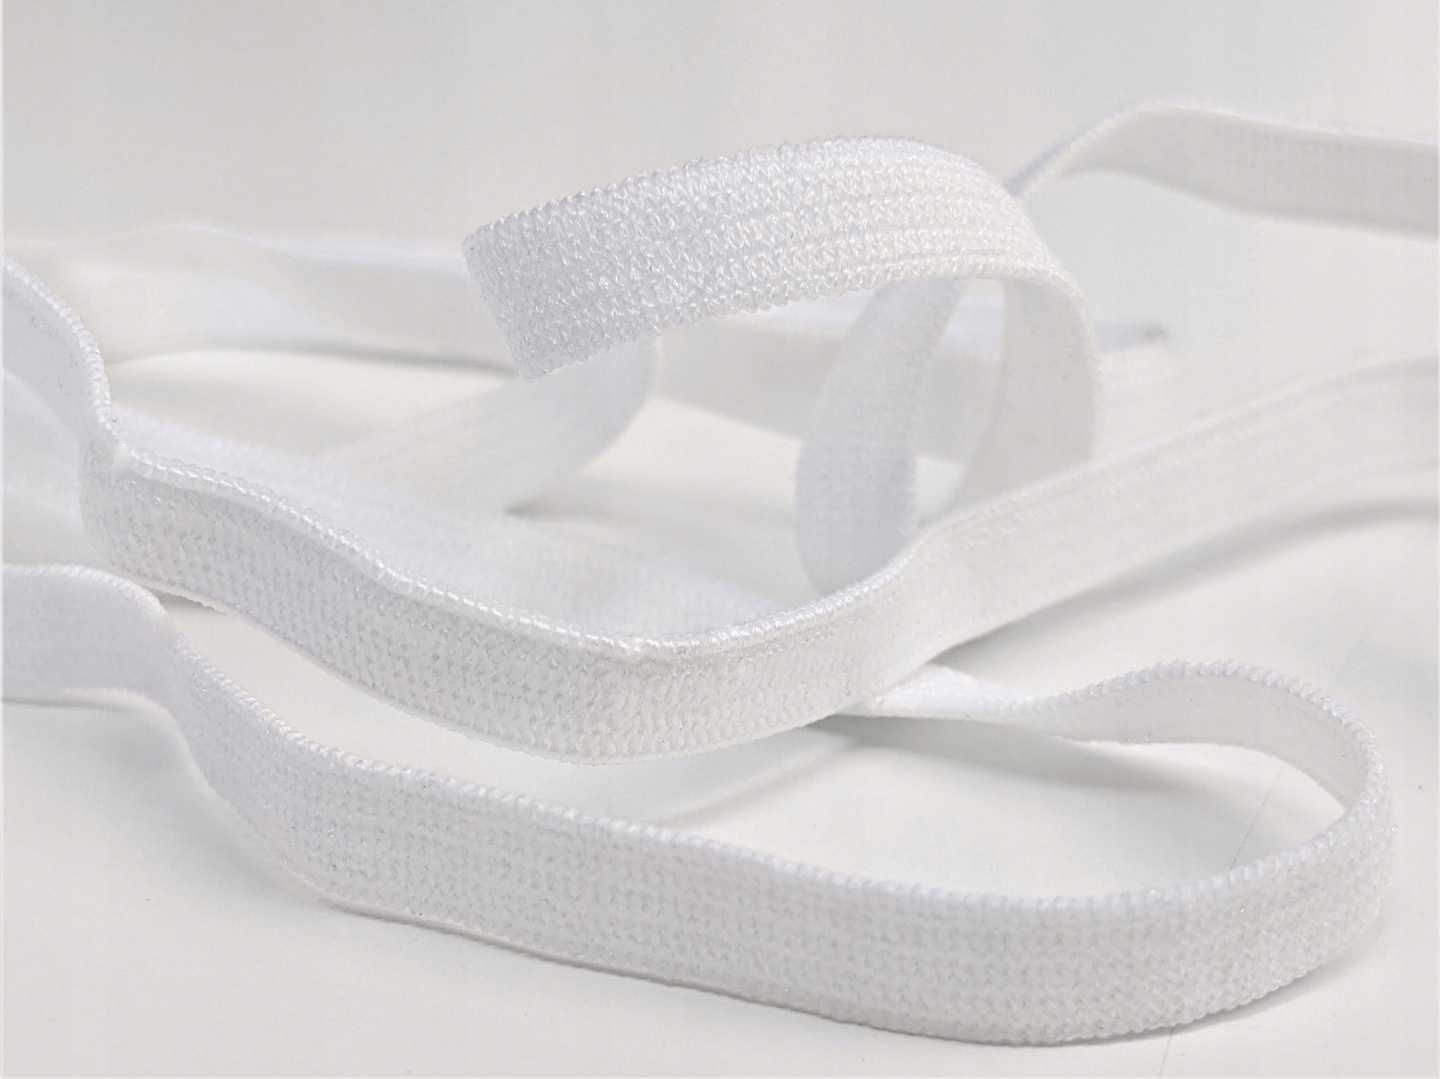 Guma biała dziana odzieżowa krawiecka elastyczna 5mm 100mb